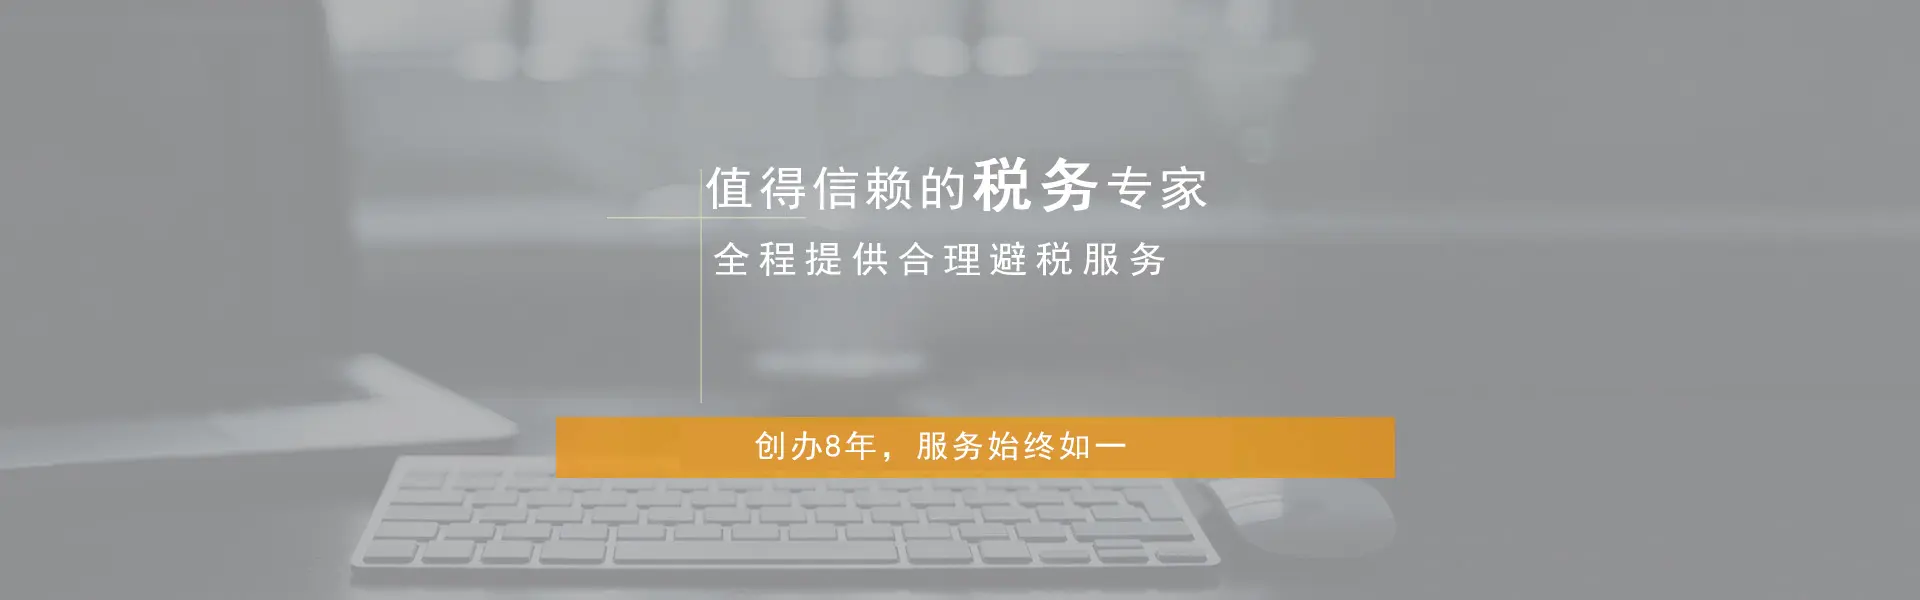 2019年在重庆工商登记办理“公司变更登记申请”手续有哪些注意事项？详细解释